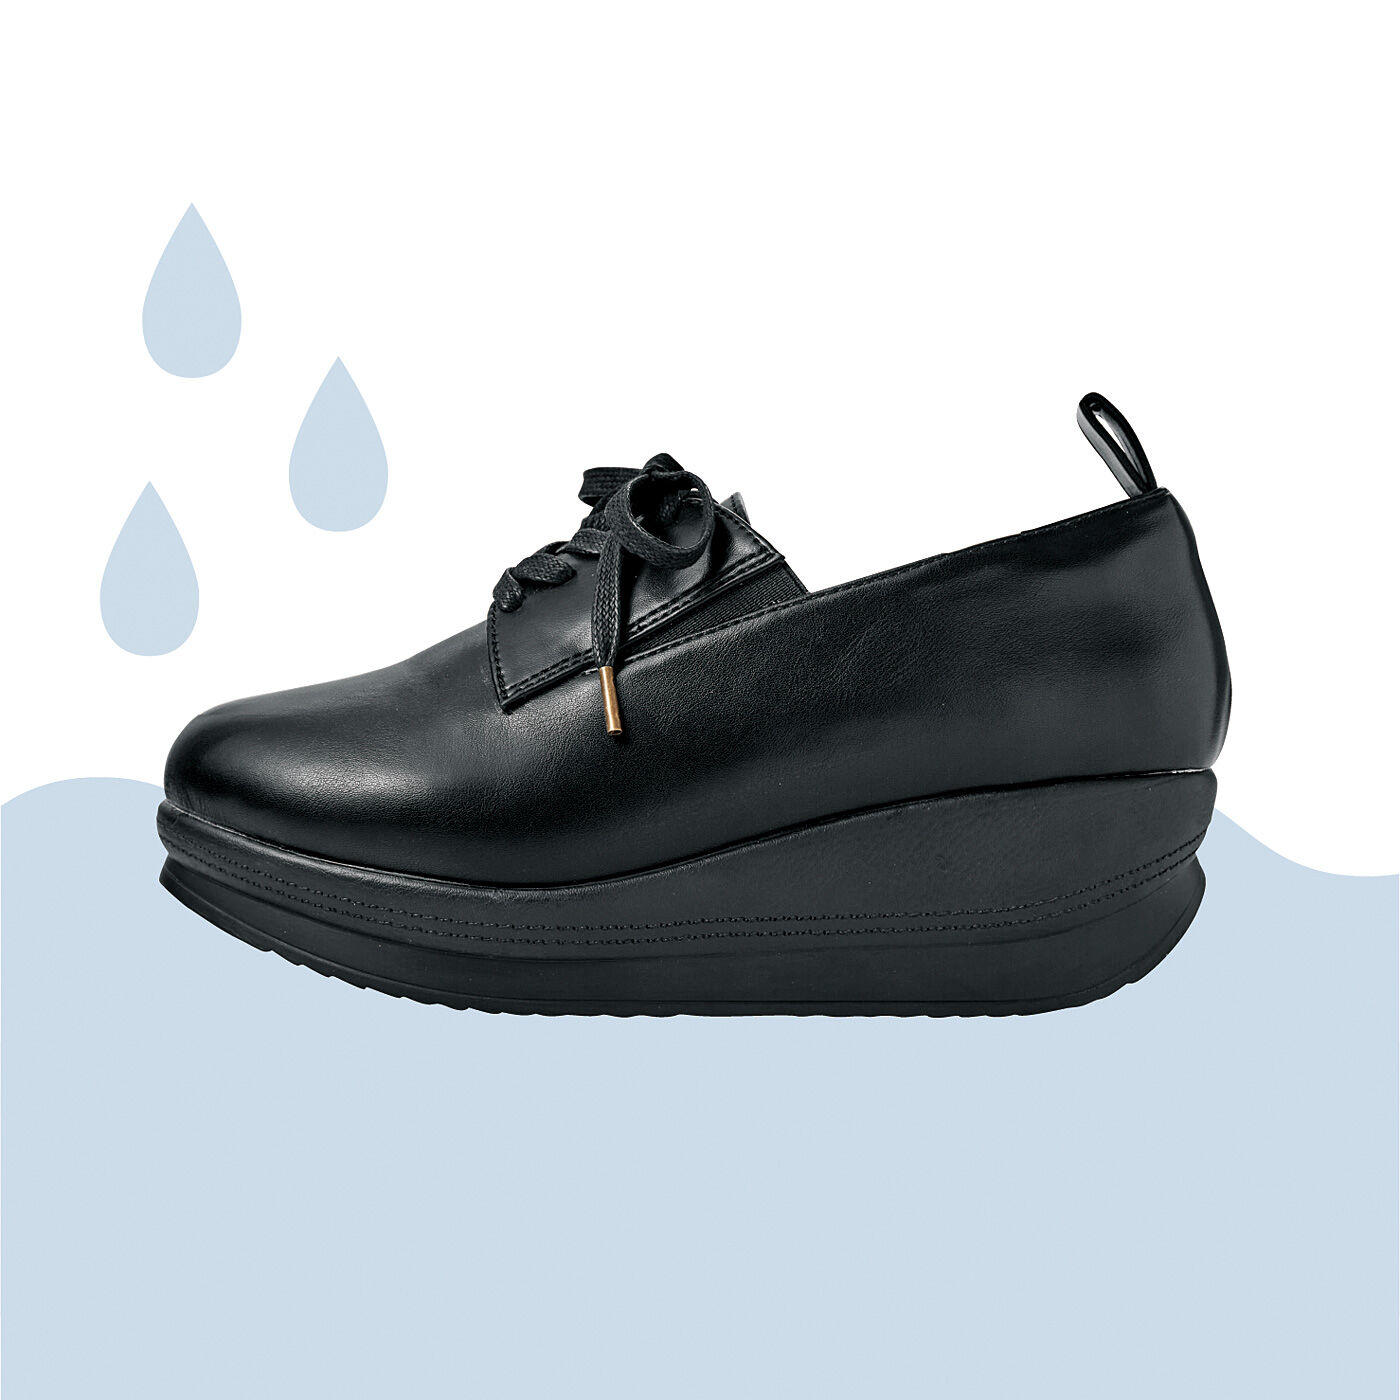 フェリシモの雑貨 Kraso|UP.de　振り子ソールでスイスイ歩ける　晴雨兼用スタイルアップシューズ〈ブラック〉|靴底まわりに防水テープと防水糊を使用。雨のしみ込みをガードします。